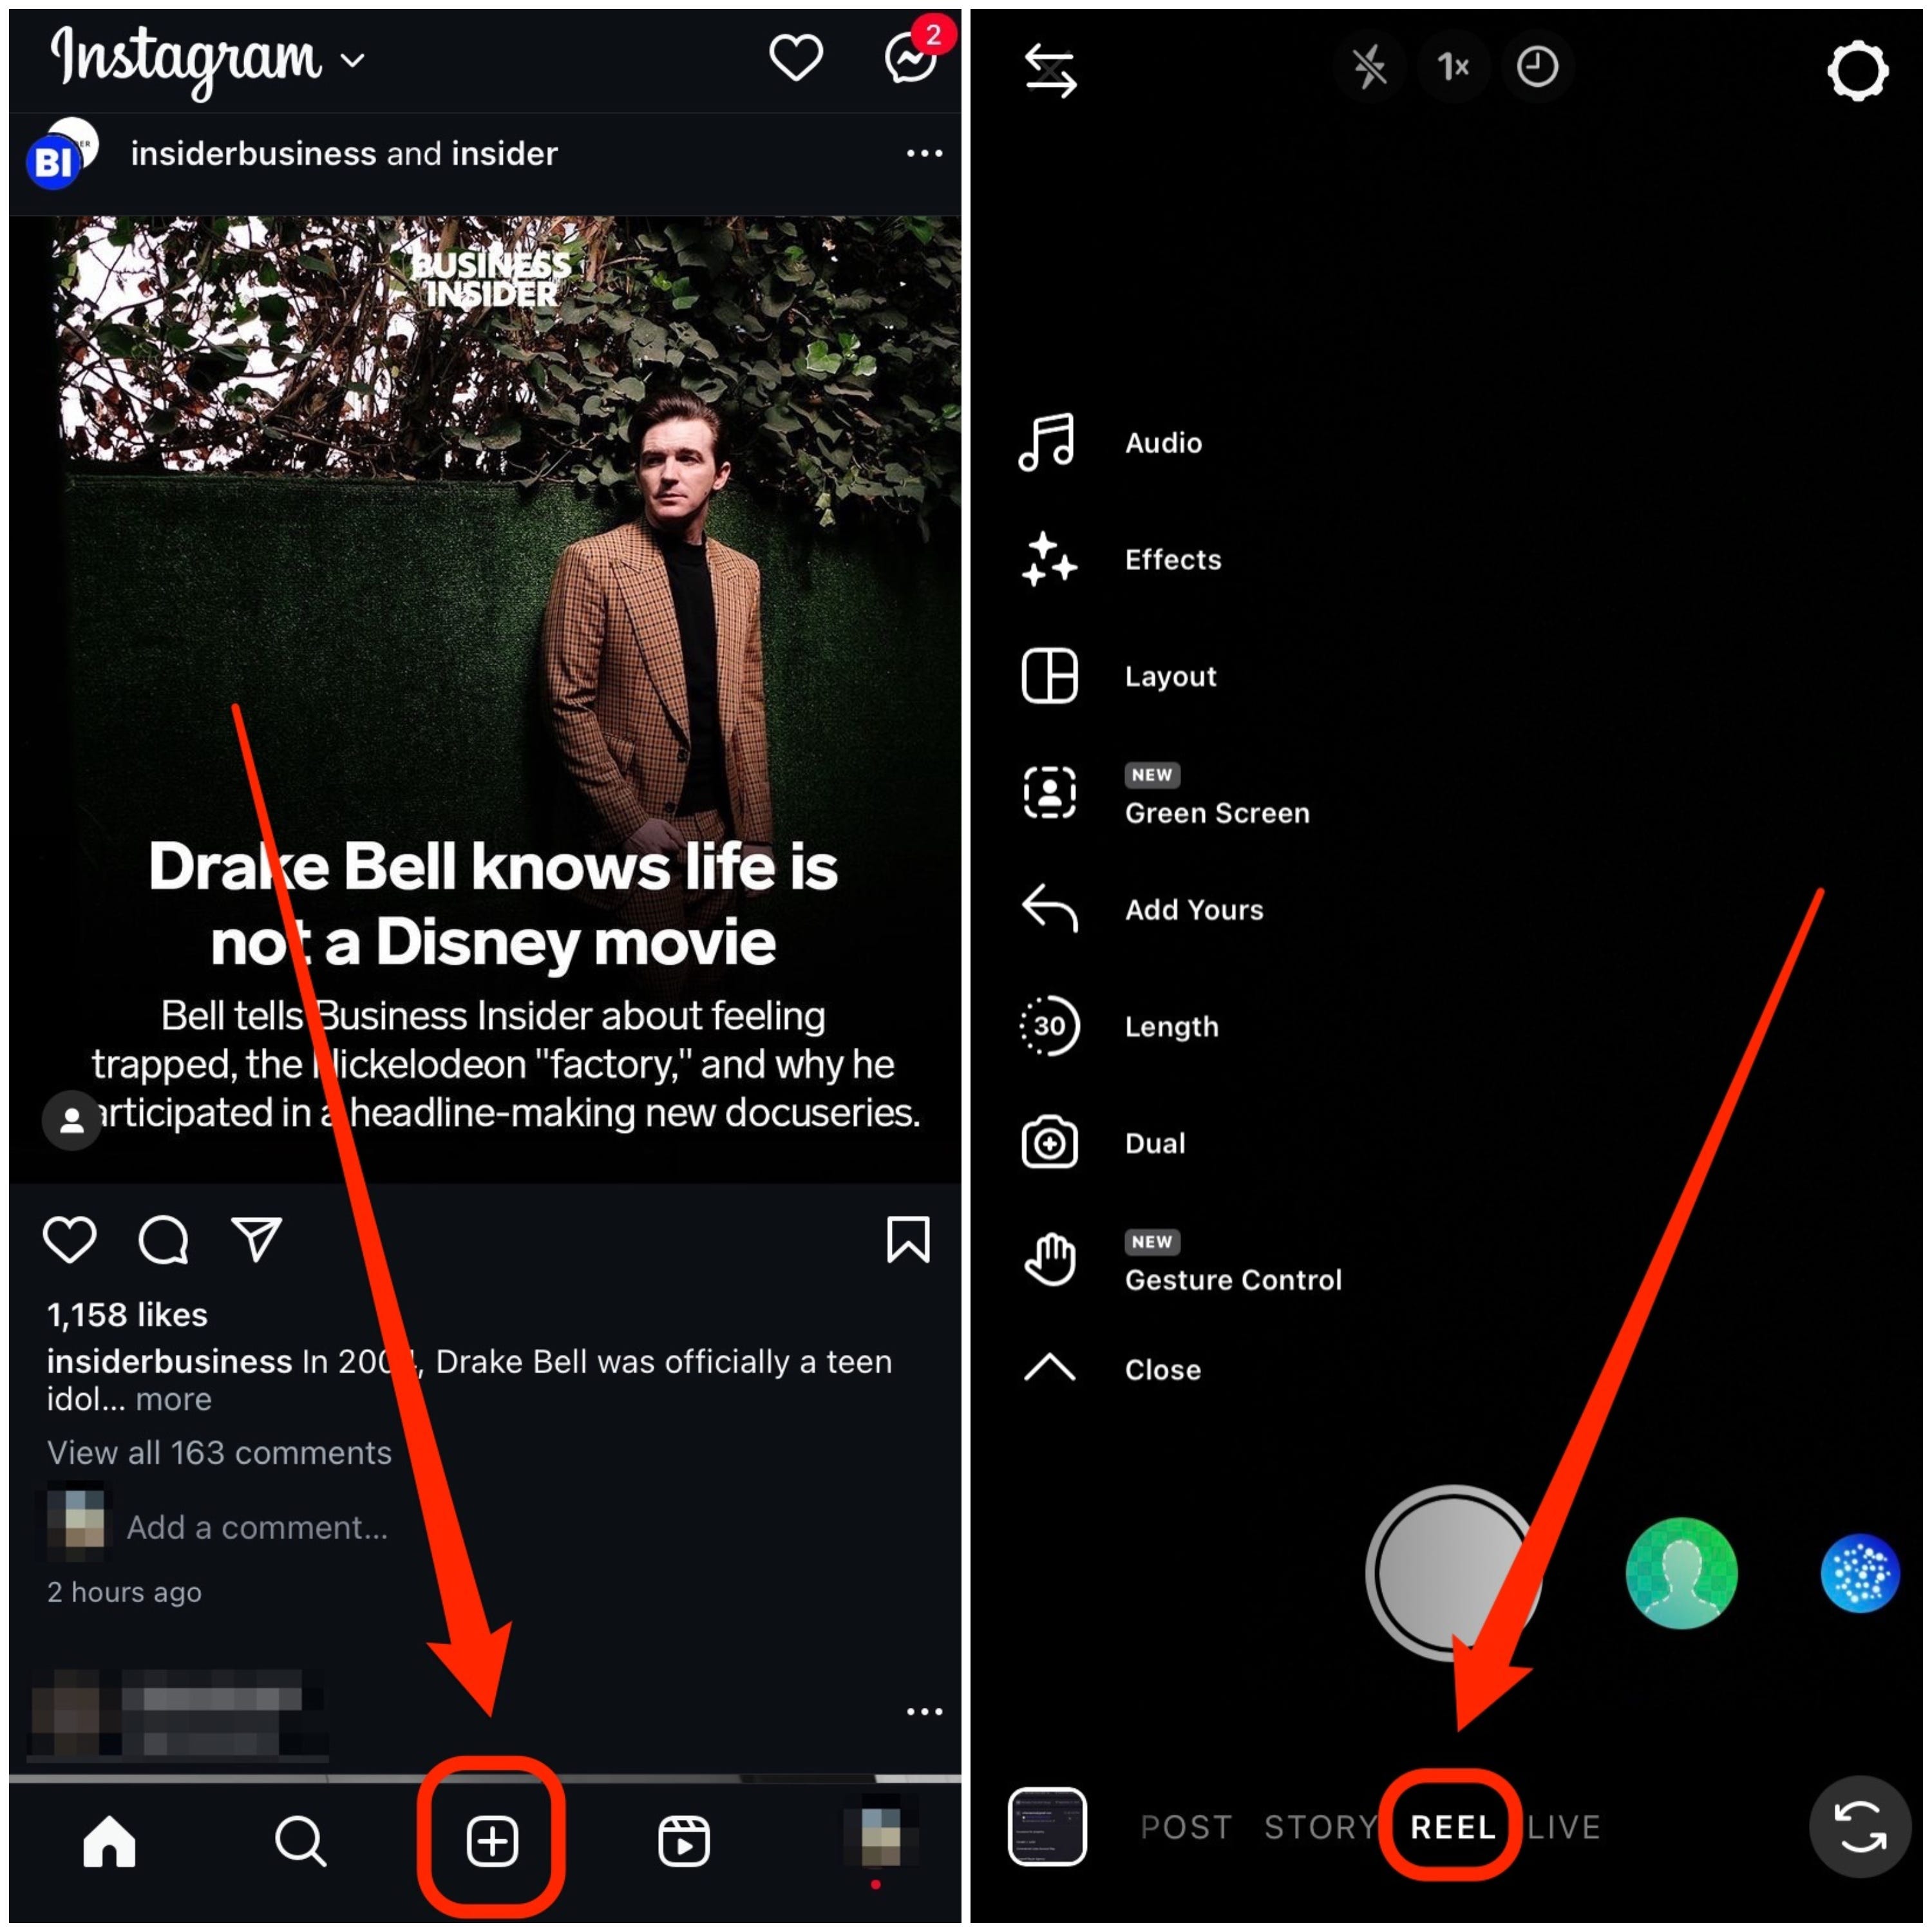 Zwei Screenshots der Instagram-App zeigen, wie man mithilfe der Schaltflächen in der unteren Menüleiste der App ein Reel erstellt.